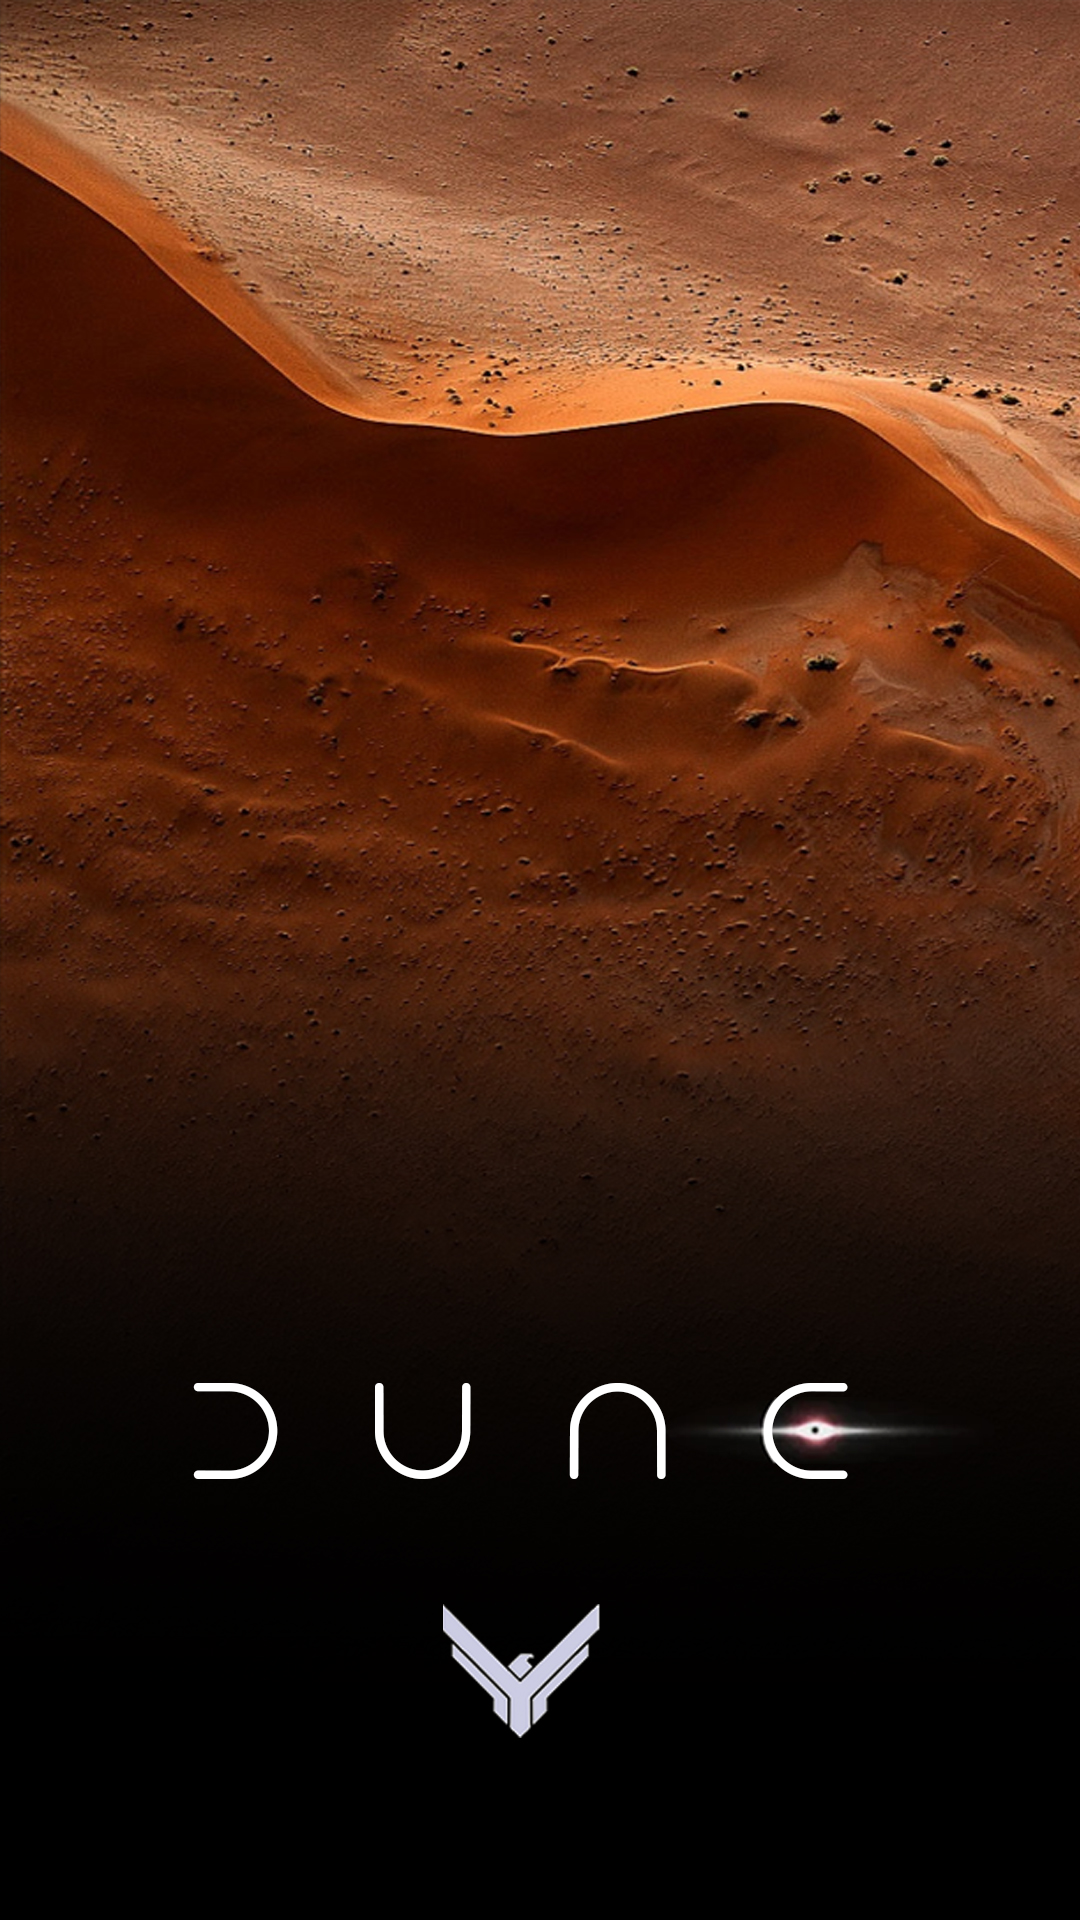 Dune - Atreides with Sand Dune by Starfade